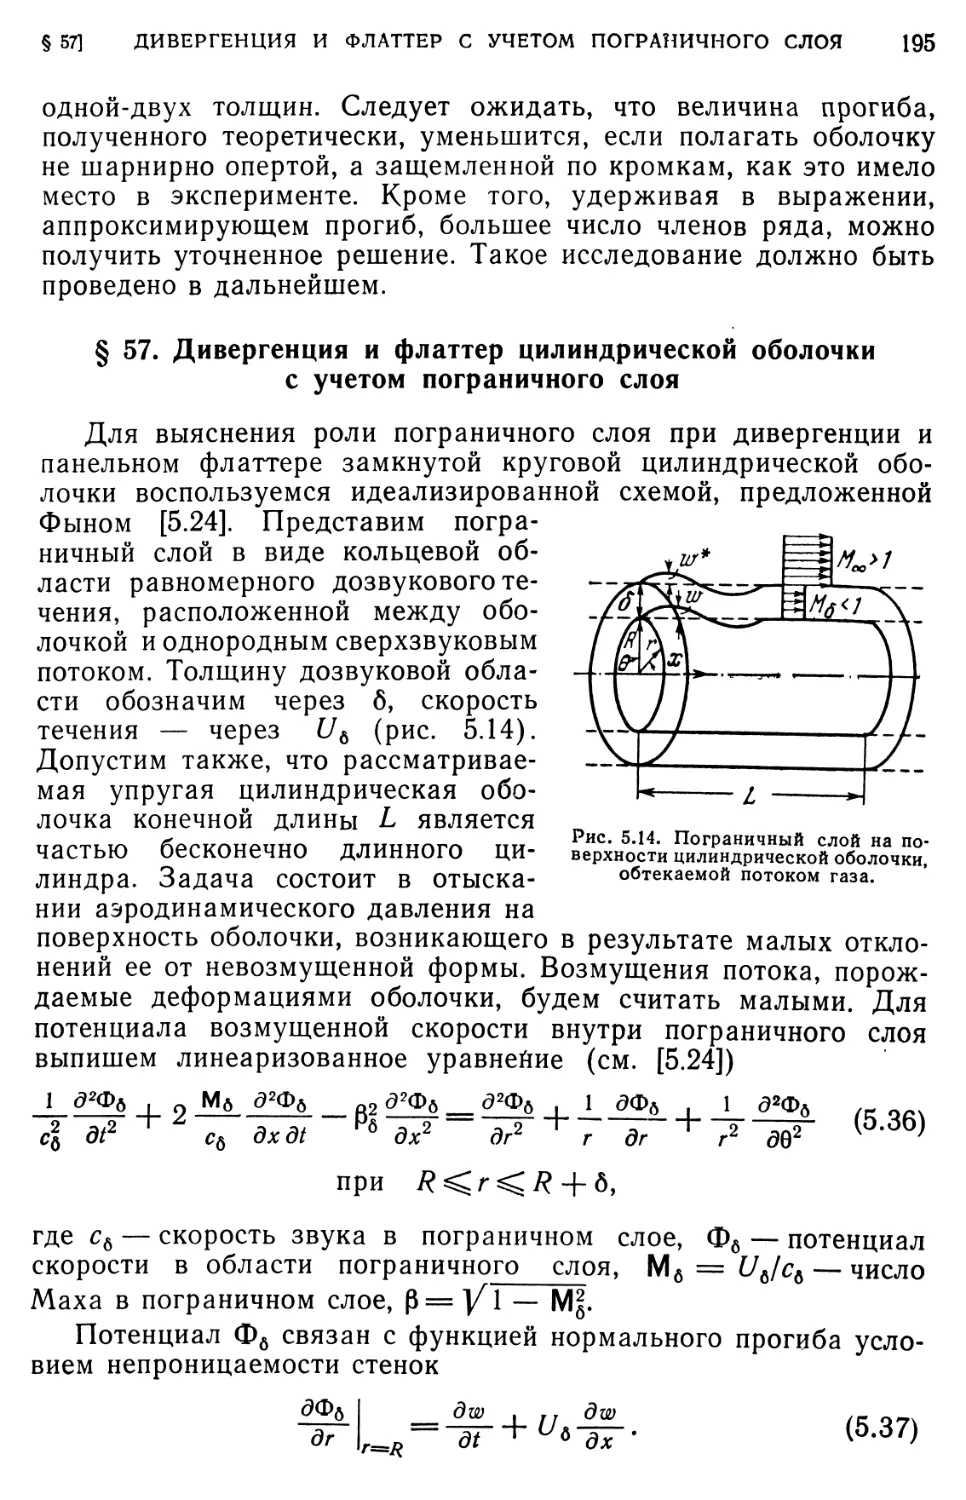 § 57. Дивергенция и флаттер цилиндрической оболочки с учетом пограничного слоя